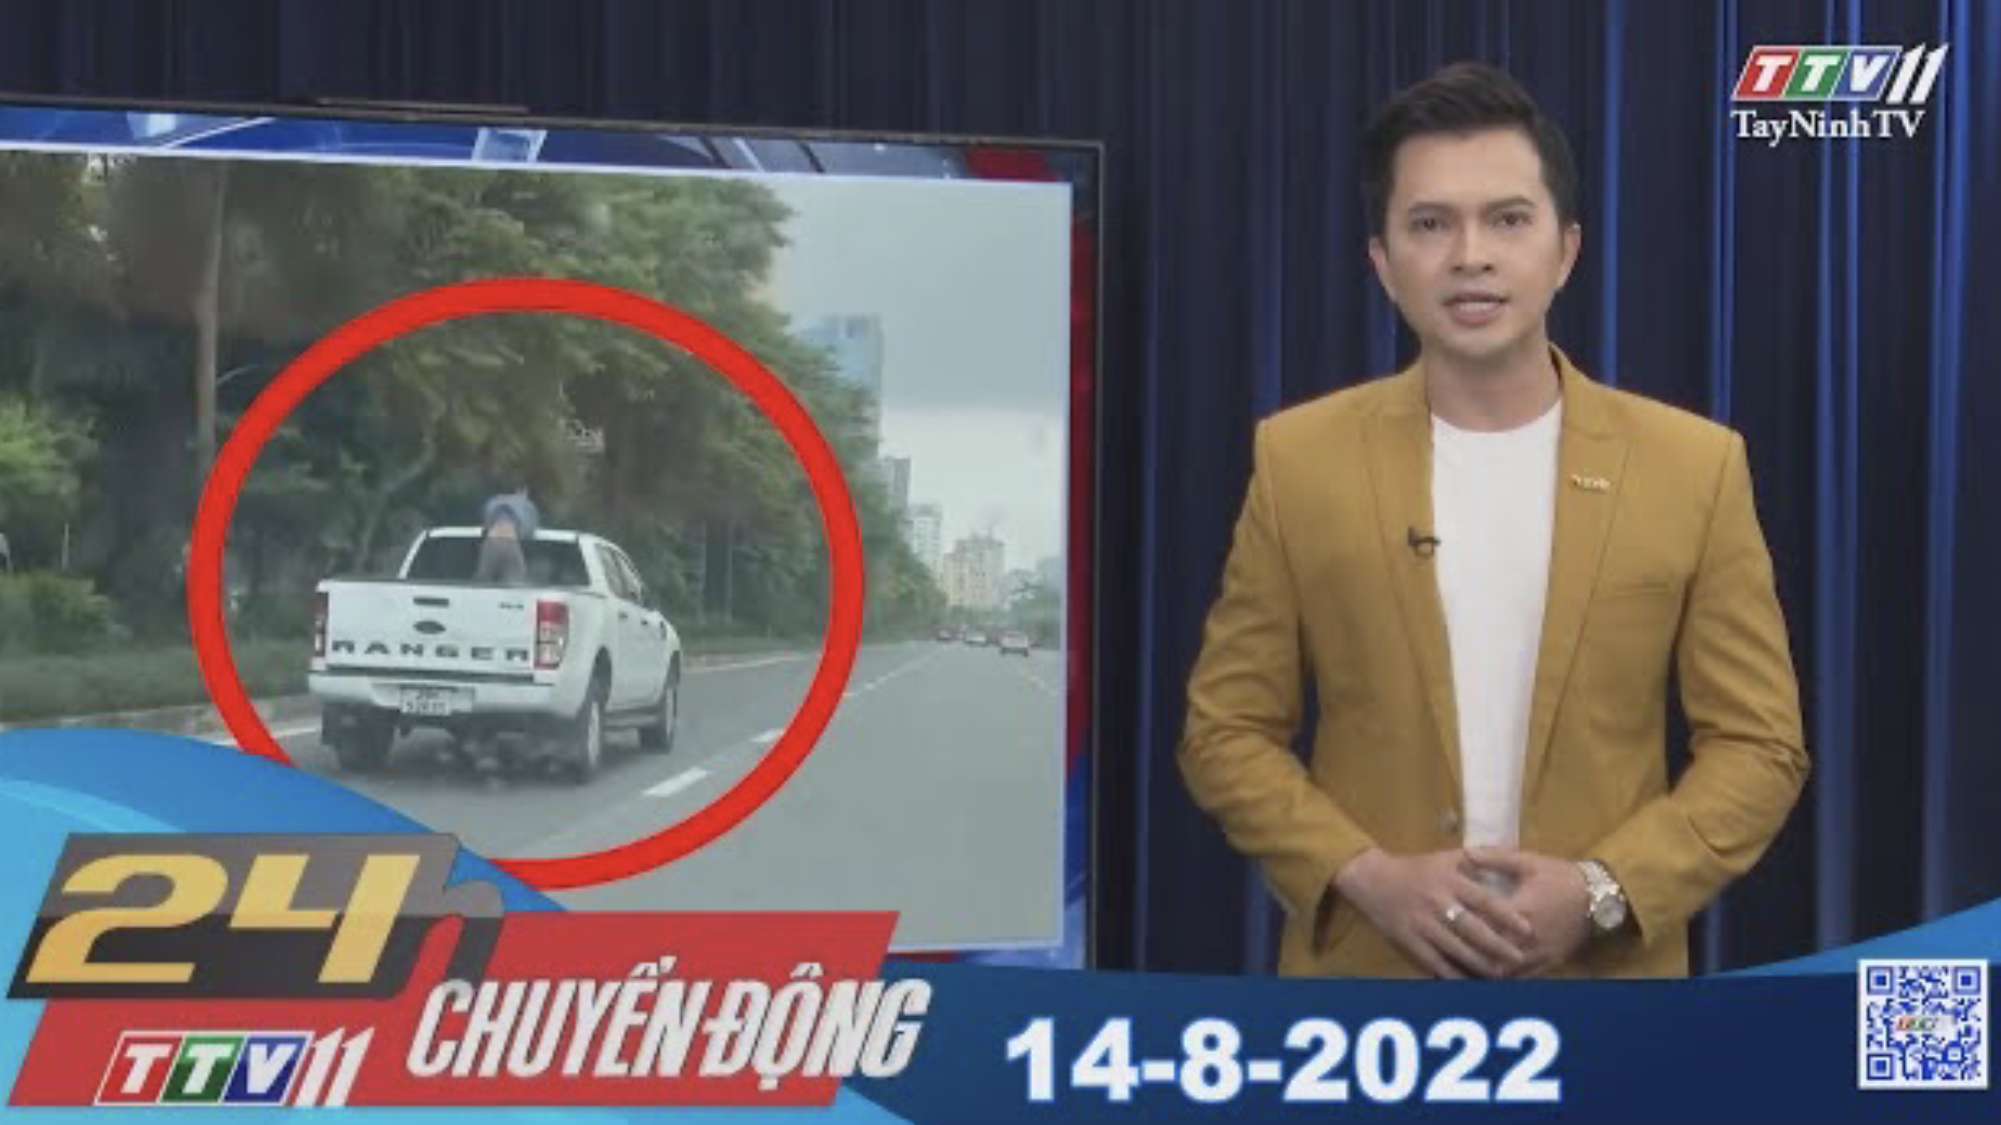 24h Chuyển động 14-8-2022 | Tin tức hôm nay | TayNinhTV